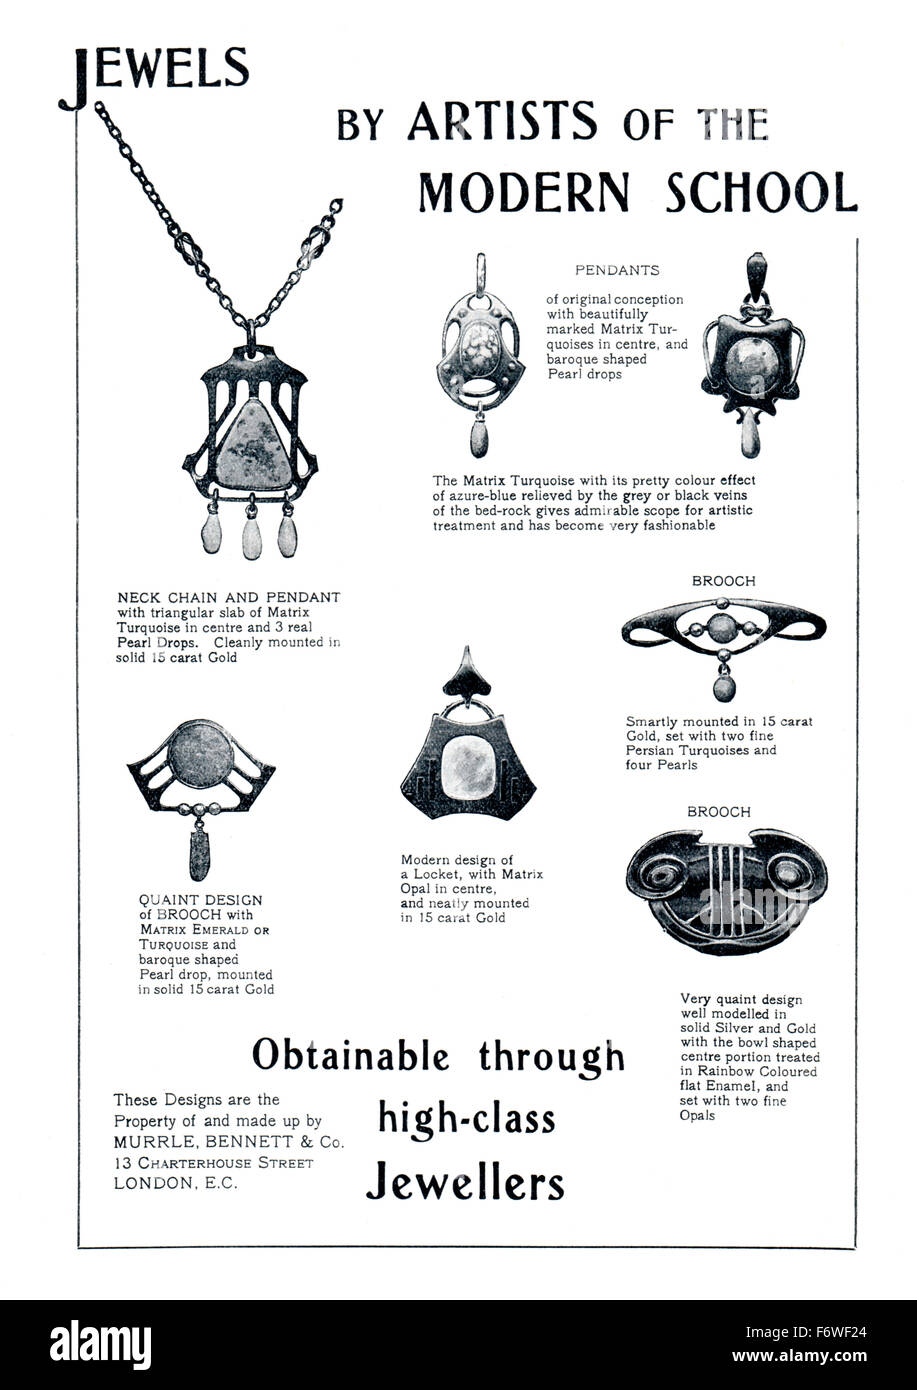 Gioielli di artisti della moderna scuola 1903 gioielli advertisememnt dallo Studio Magazine Foto Stock